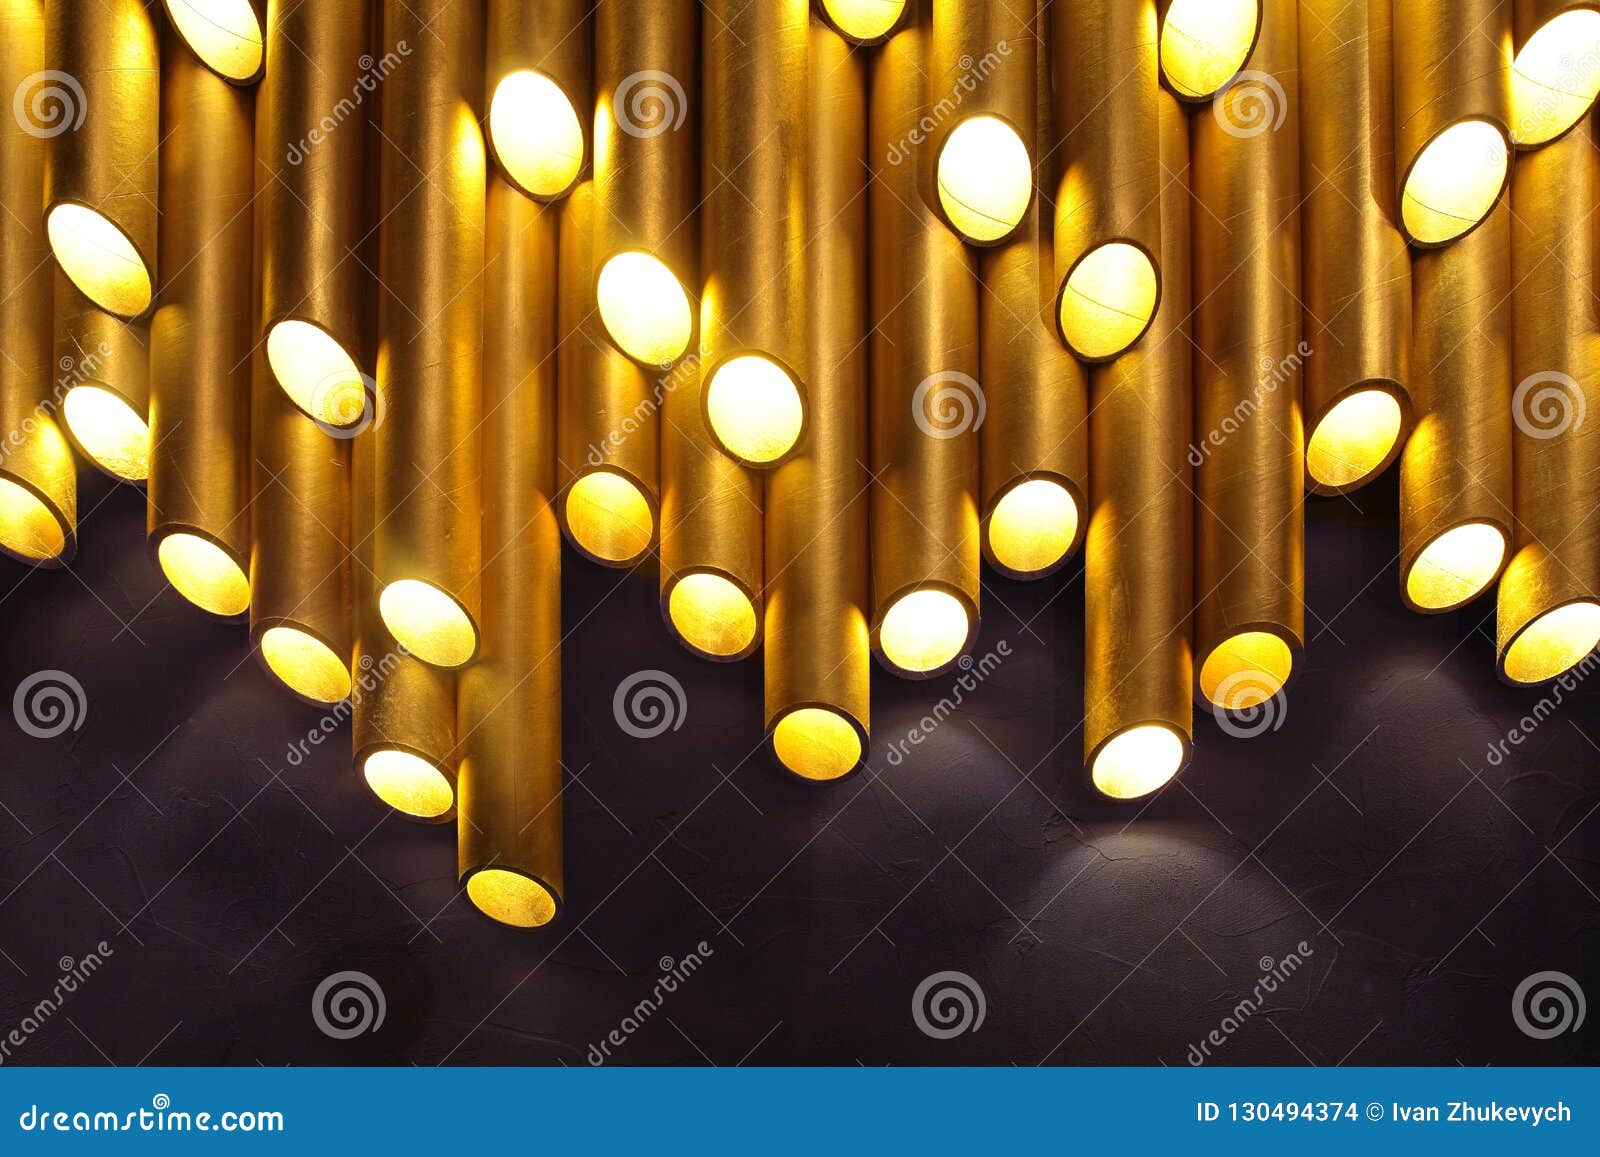 تحديث شحذ بعيد golden tube lamp   muradesignco.com